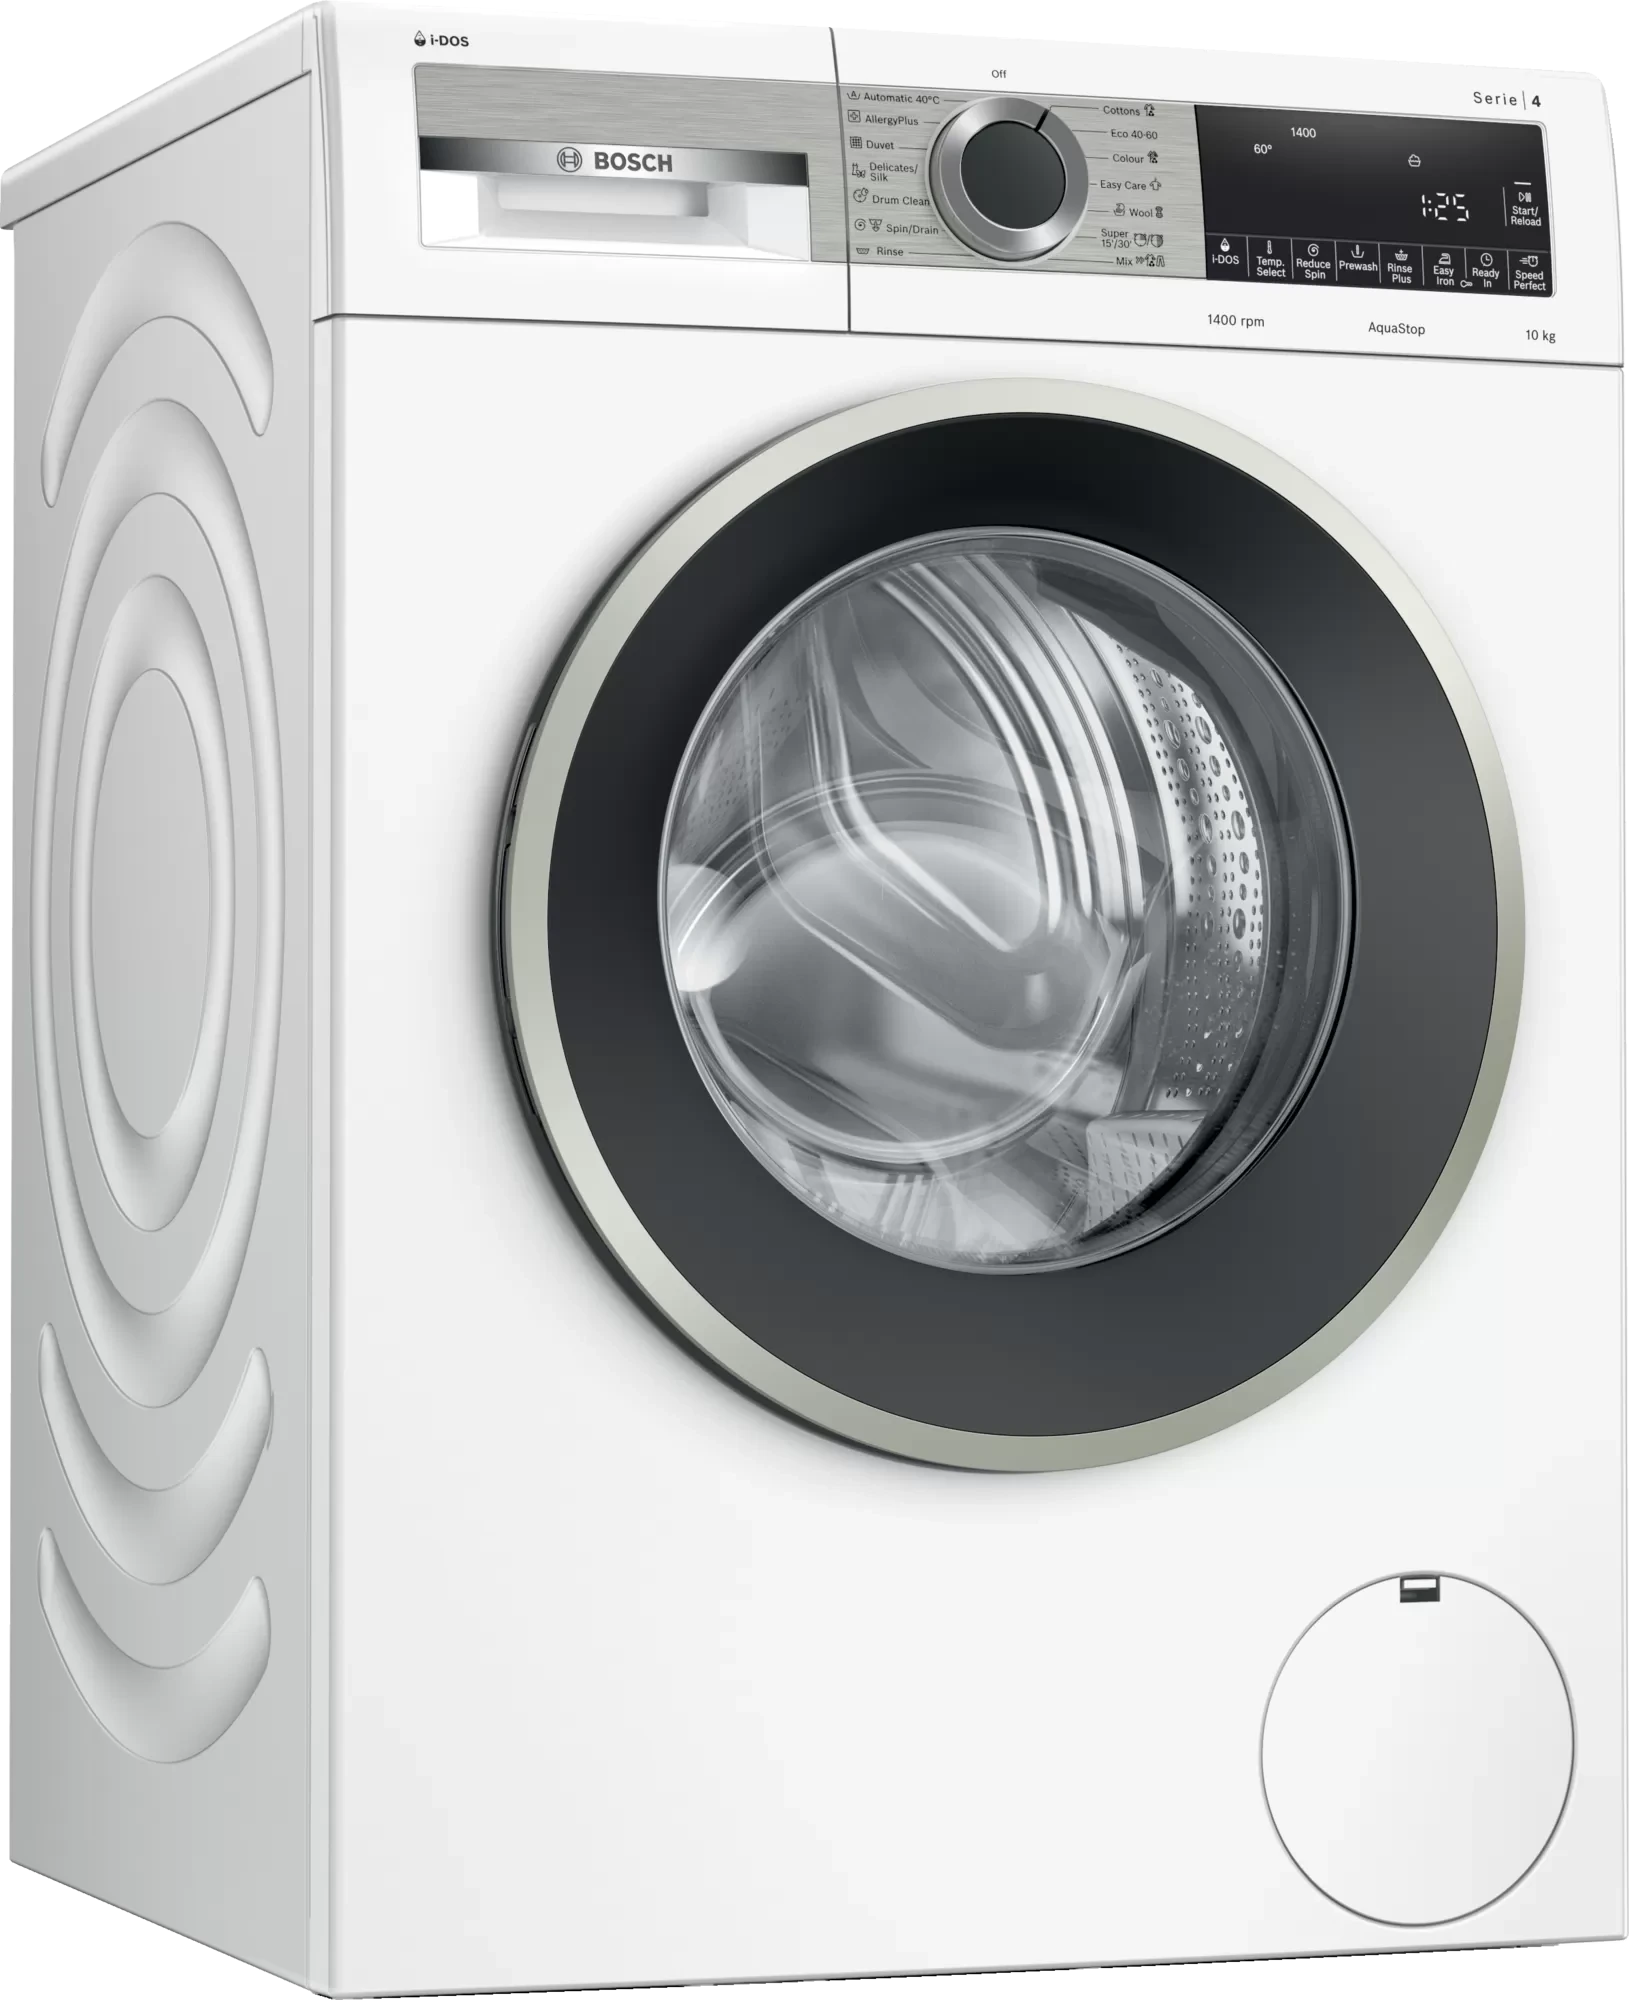 خرید و قیمت ماشین لباسشویی بوش مدل WGA254A0ME ظرفیت 10 کیلوگرم ا BoschWGA254A0ME Washing Machine - 10 Kg | ترب